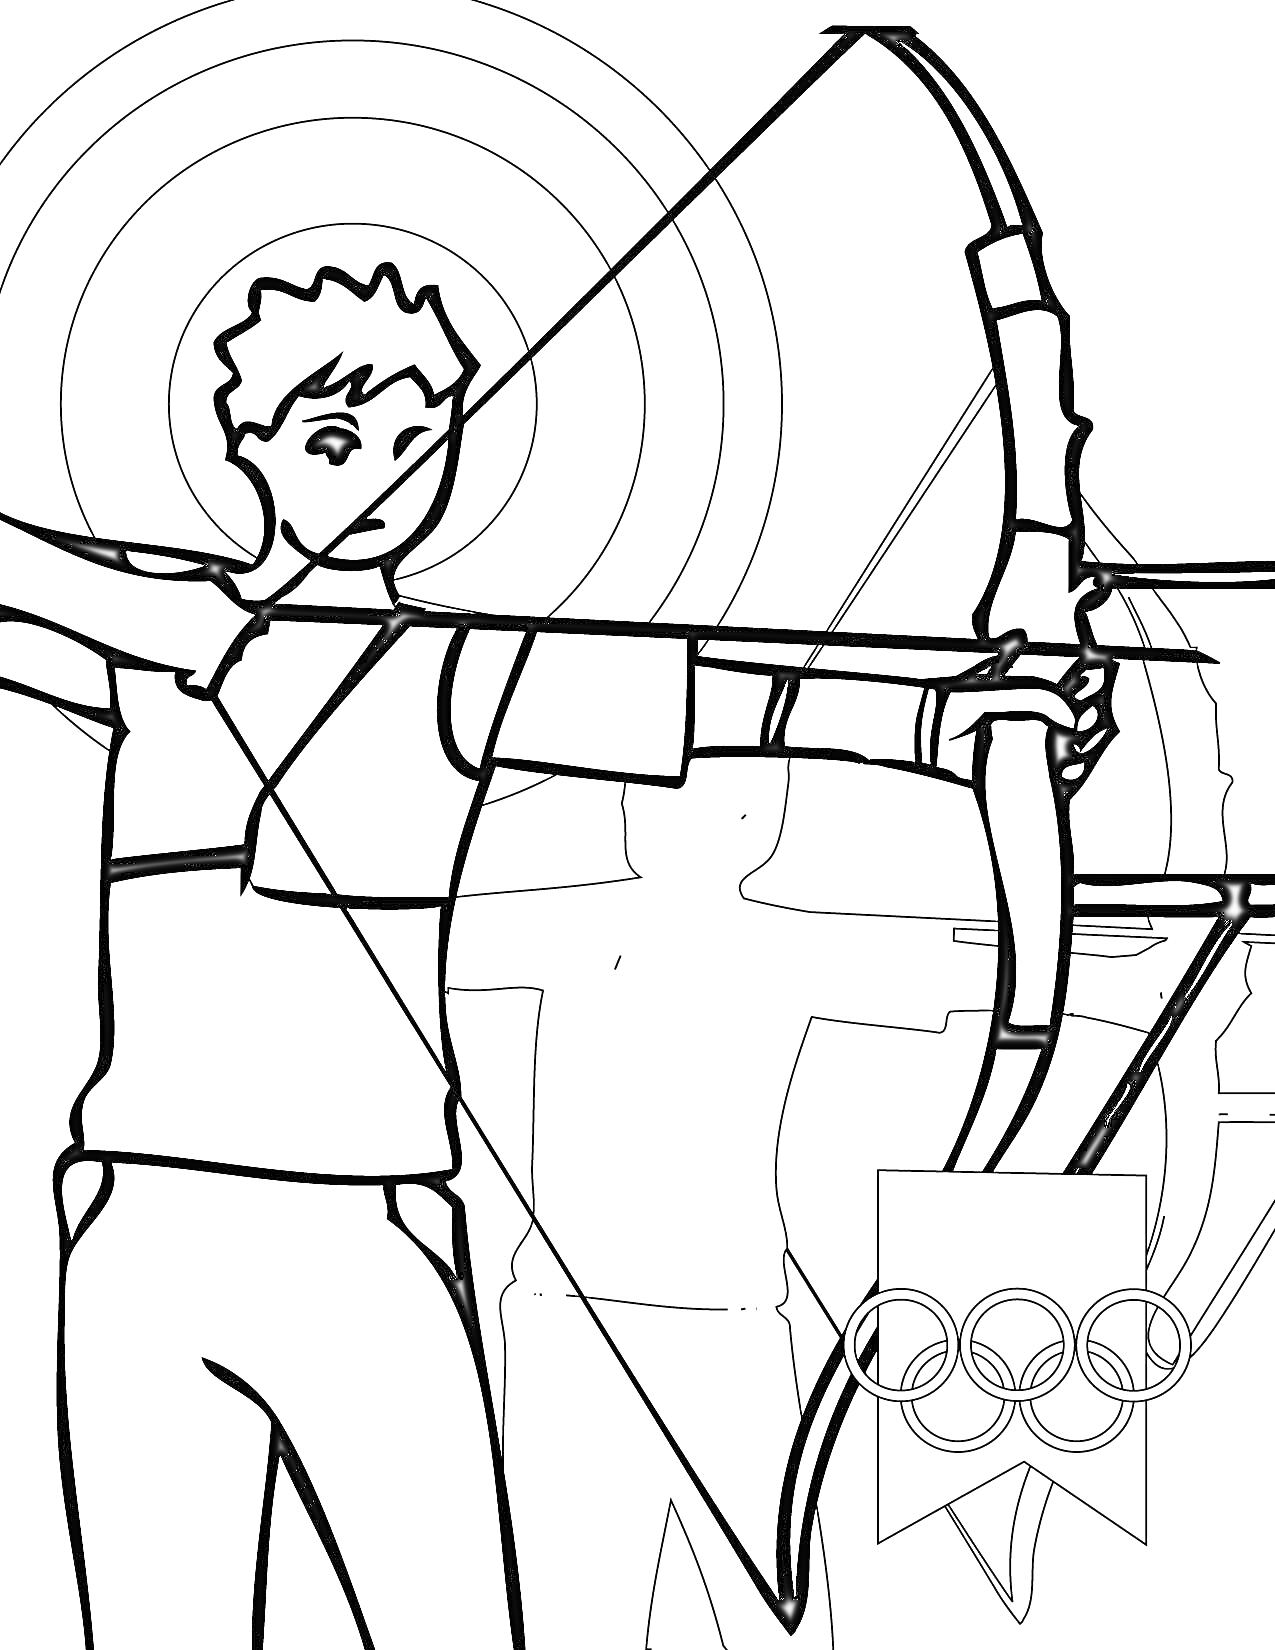 Лучник, стреляющий по мишени на фоне символа Олимпийских игр